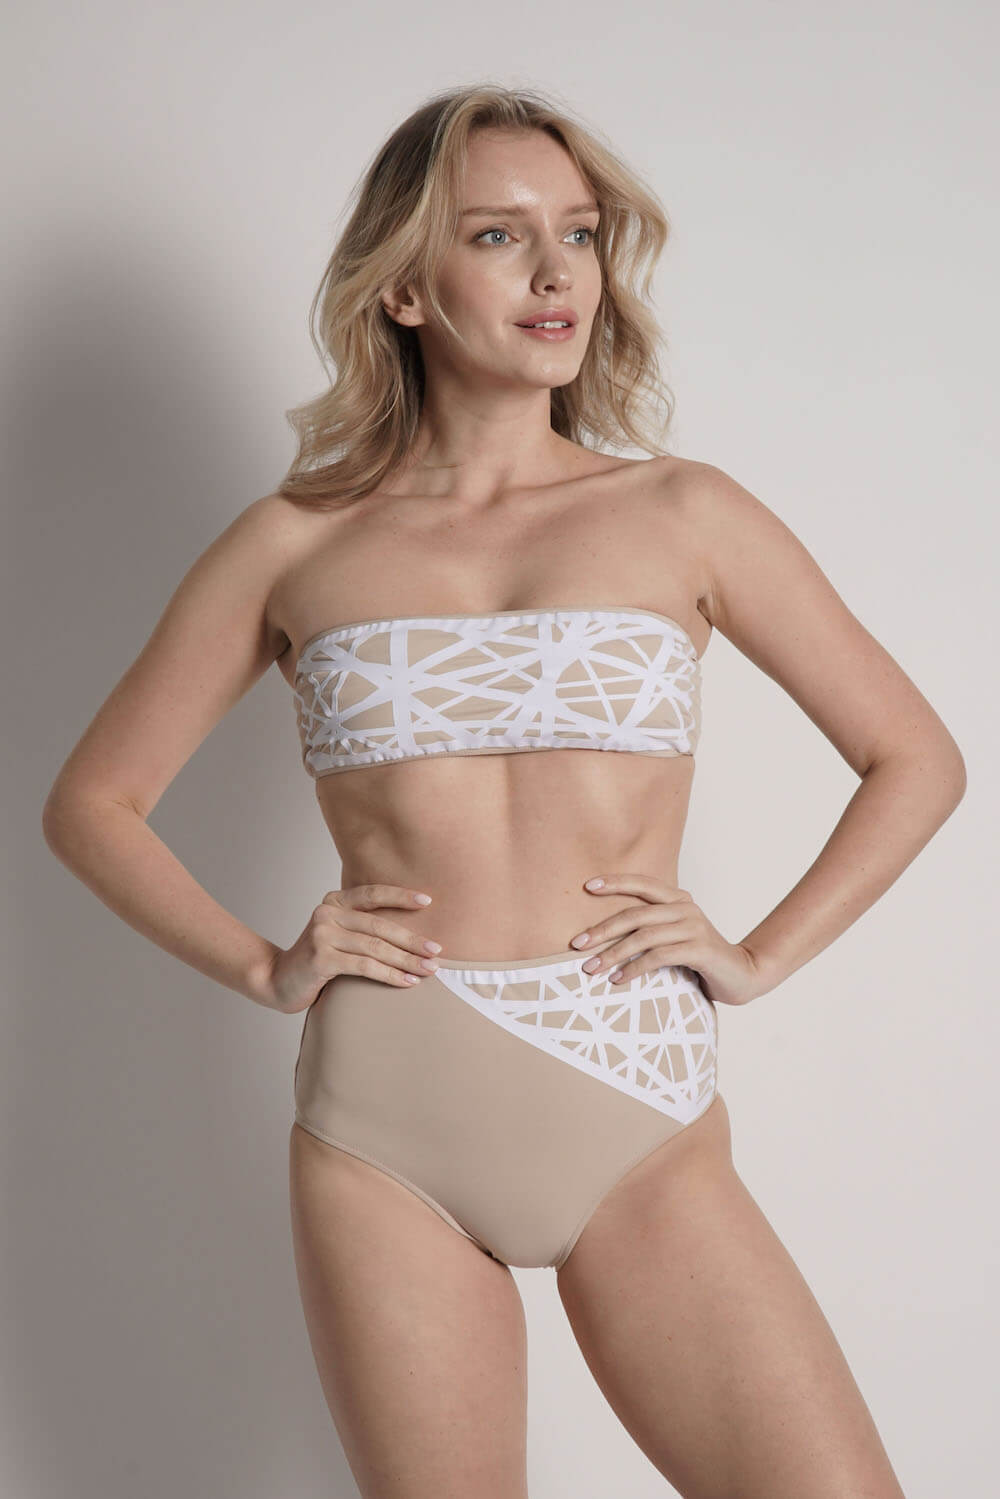 Model wears Lillian bandeau bikini top in camel with white laser details